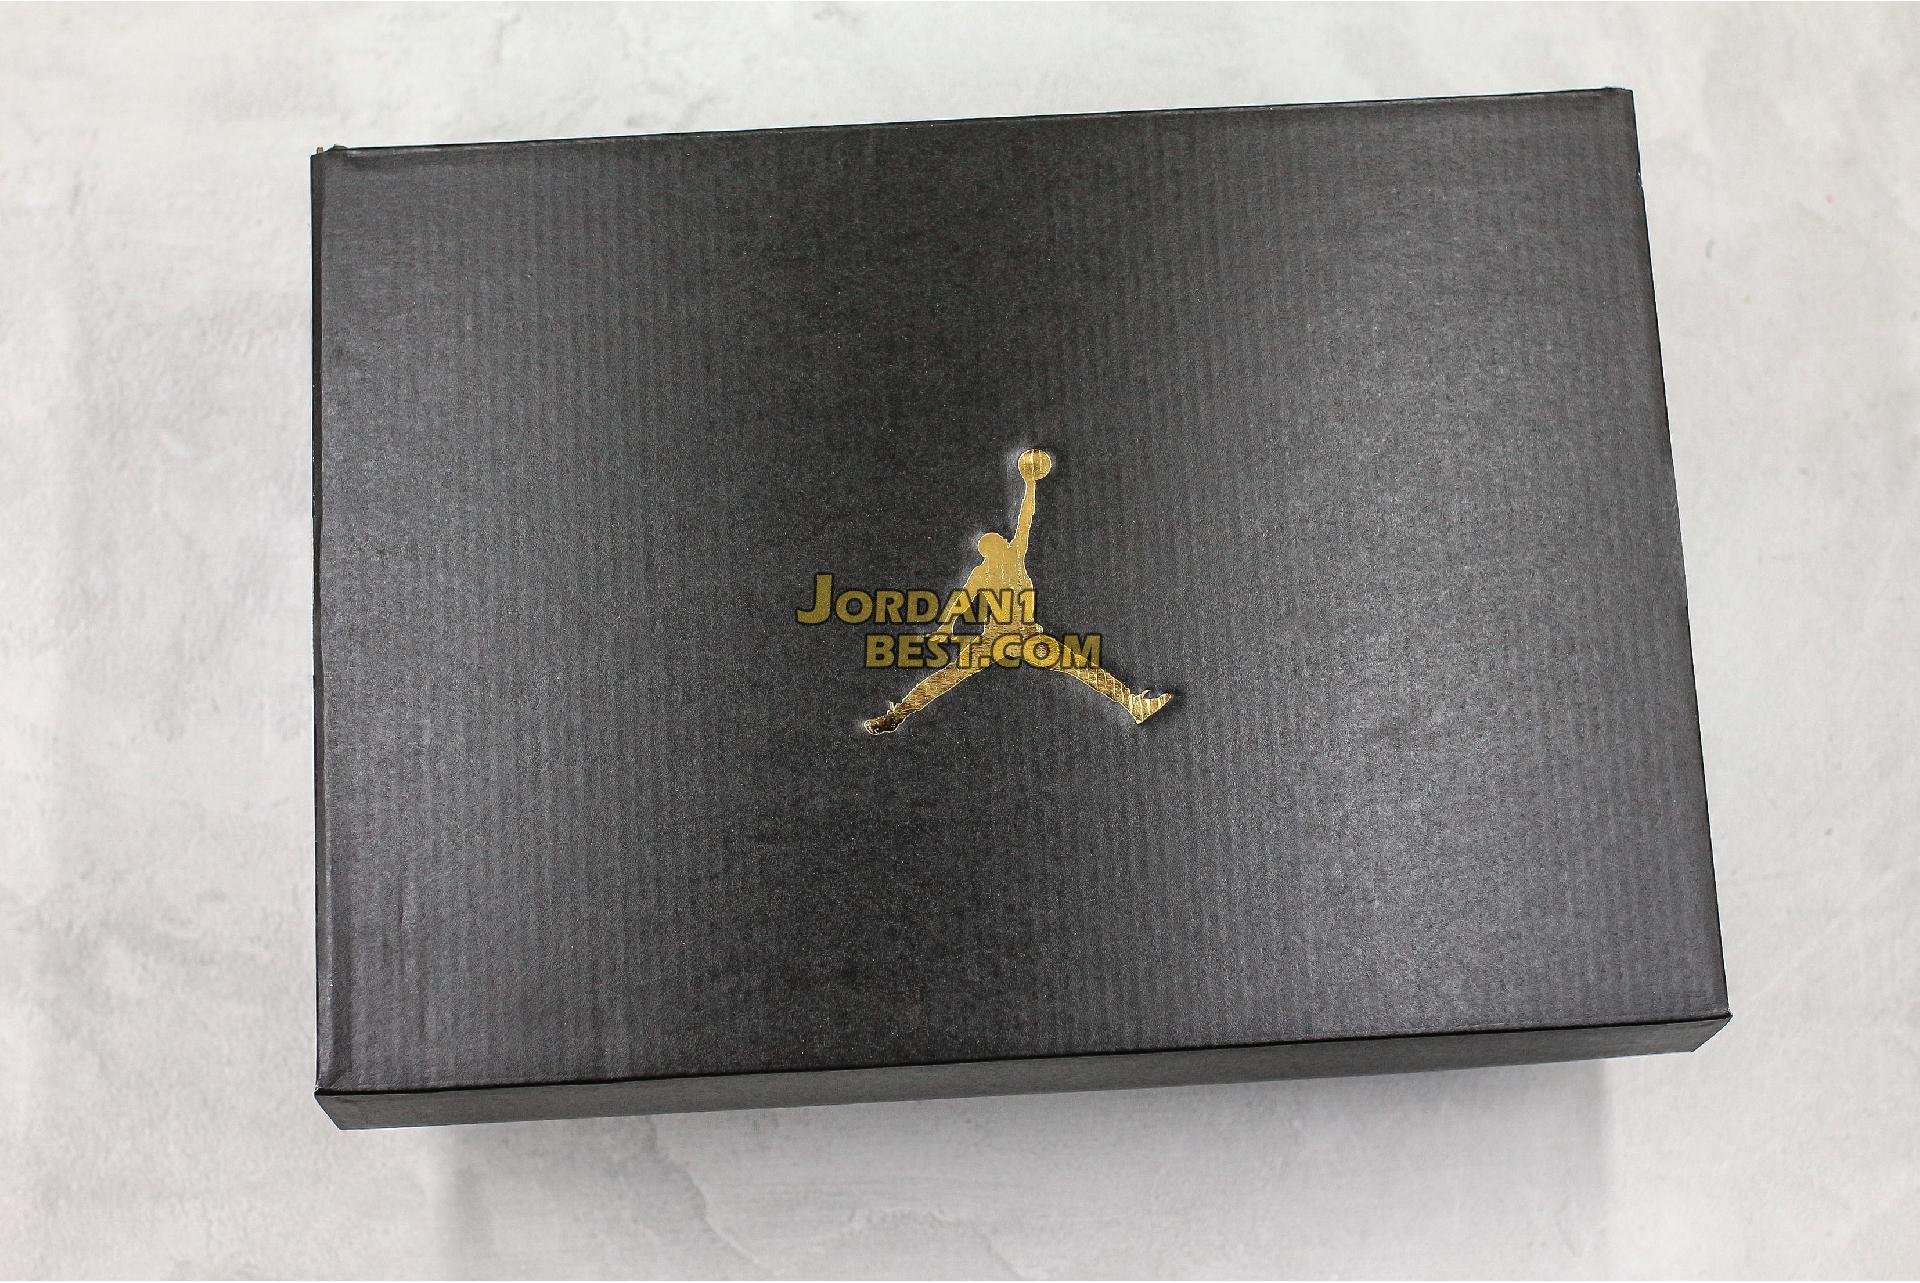 Air Jordan 6 Rings "Cool Grey" 322992-015 Mens Womens